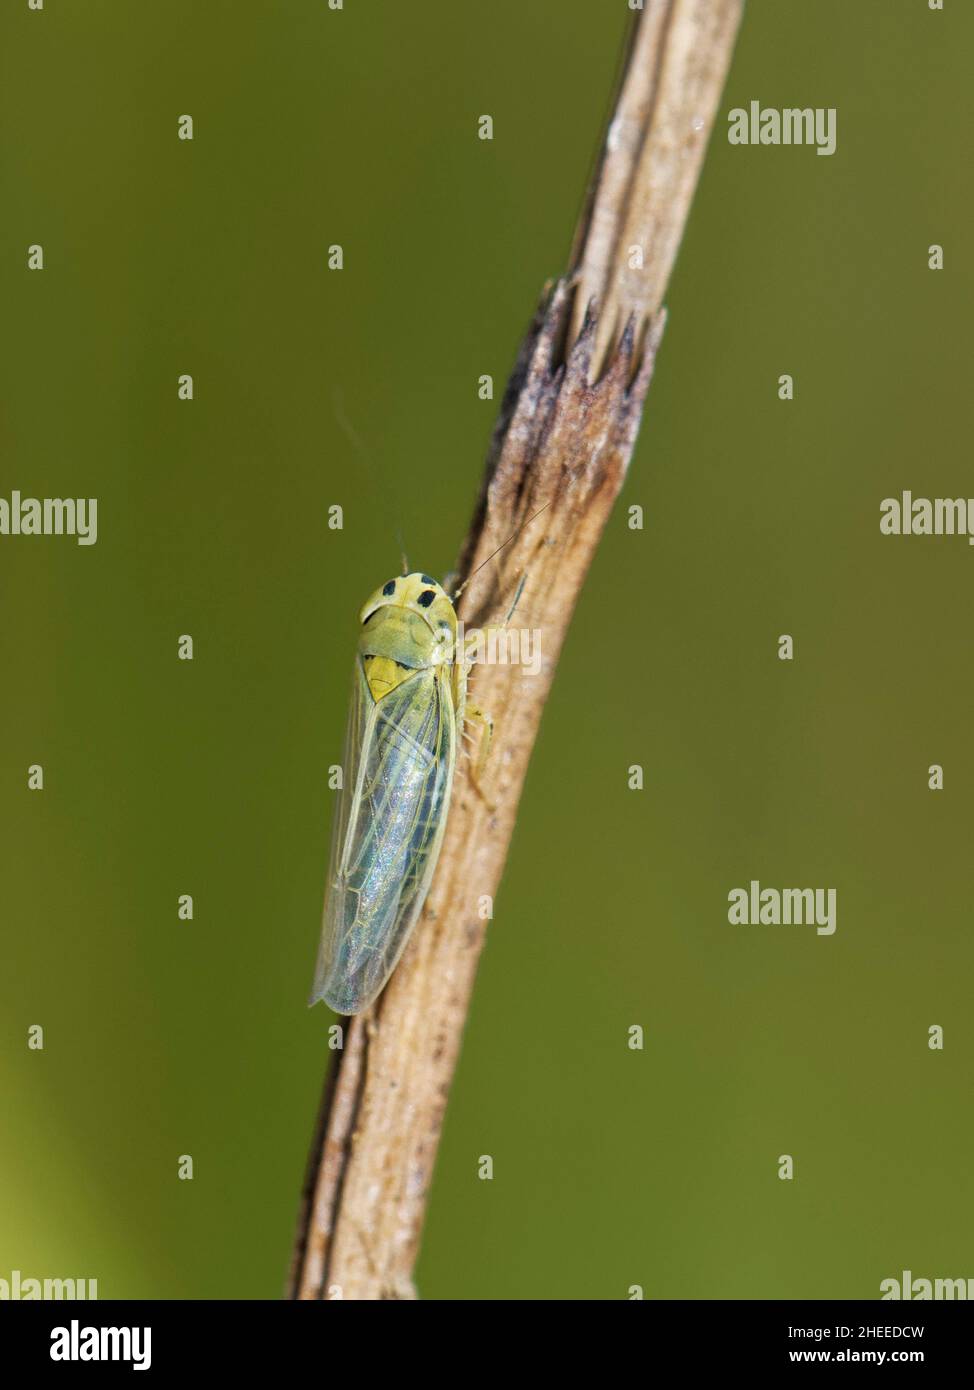 La cicadelle (Cicadula saturata), une espèce d'alimentation de perdrix, sur une tige d'Horsetail dans un marais d'eau douce, Kenfig NNR, Glamourgan, pays de Galles, Royaume-Uni,Juillet Banque D'Images